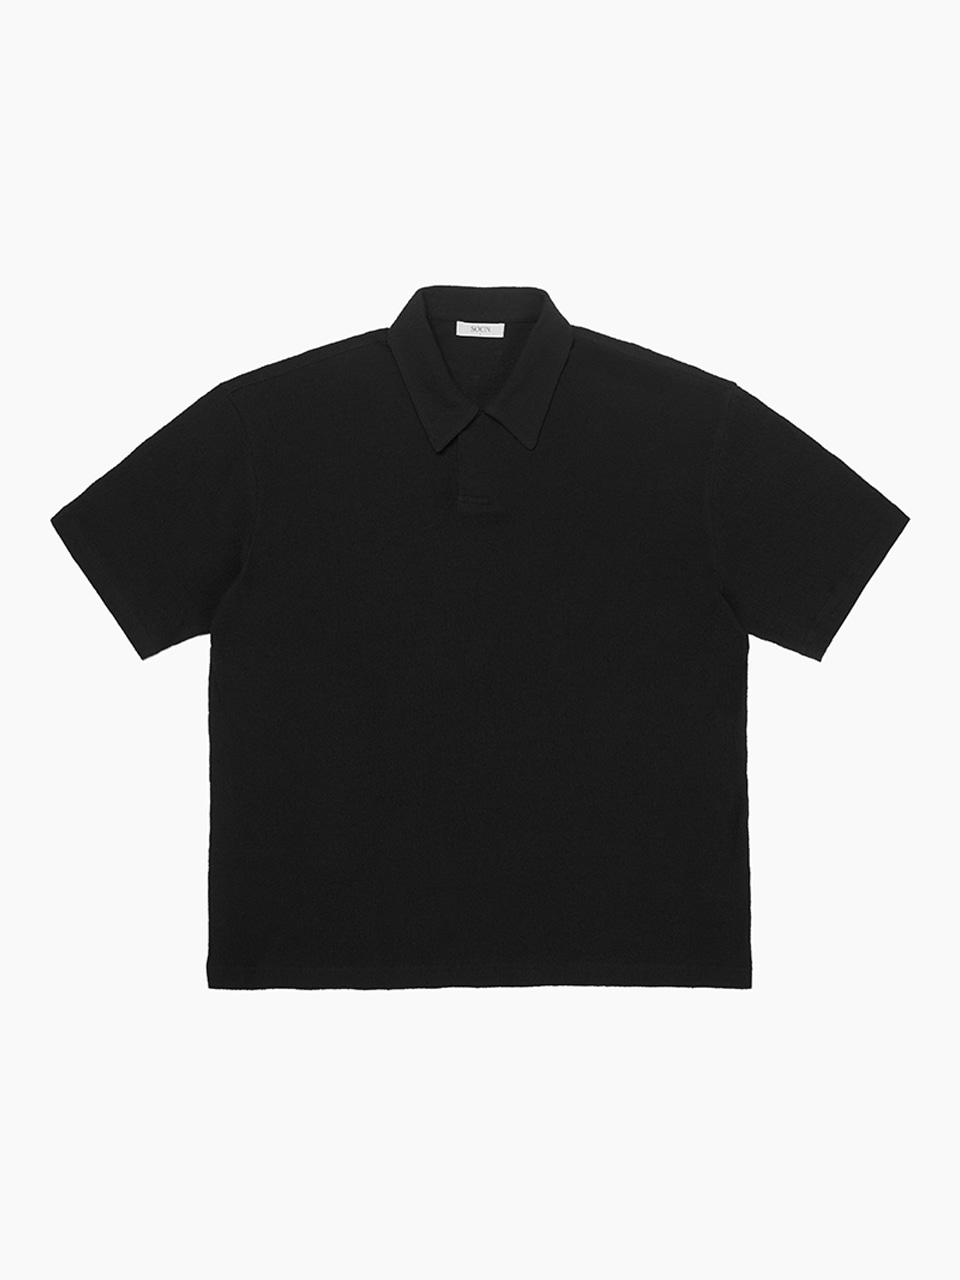 Terry Soutien Half T-shirts (Black)